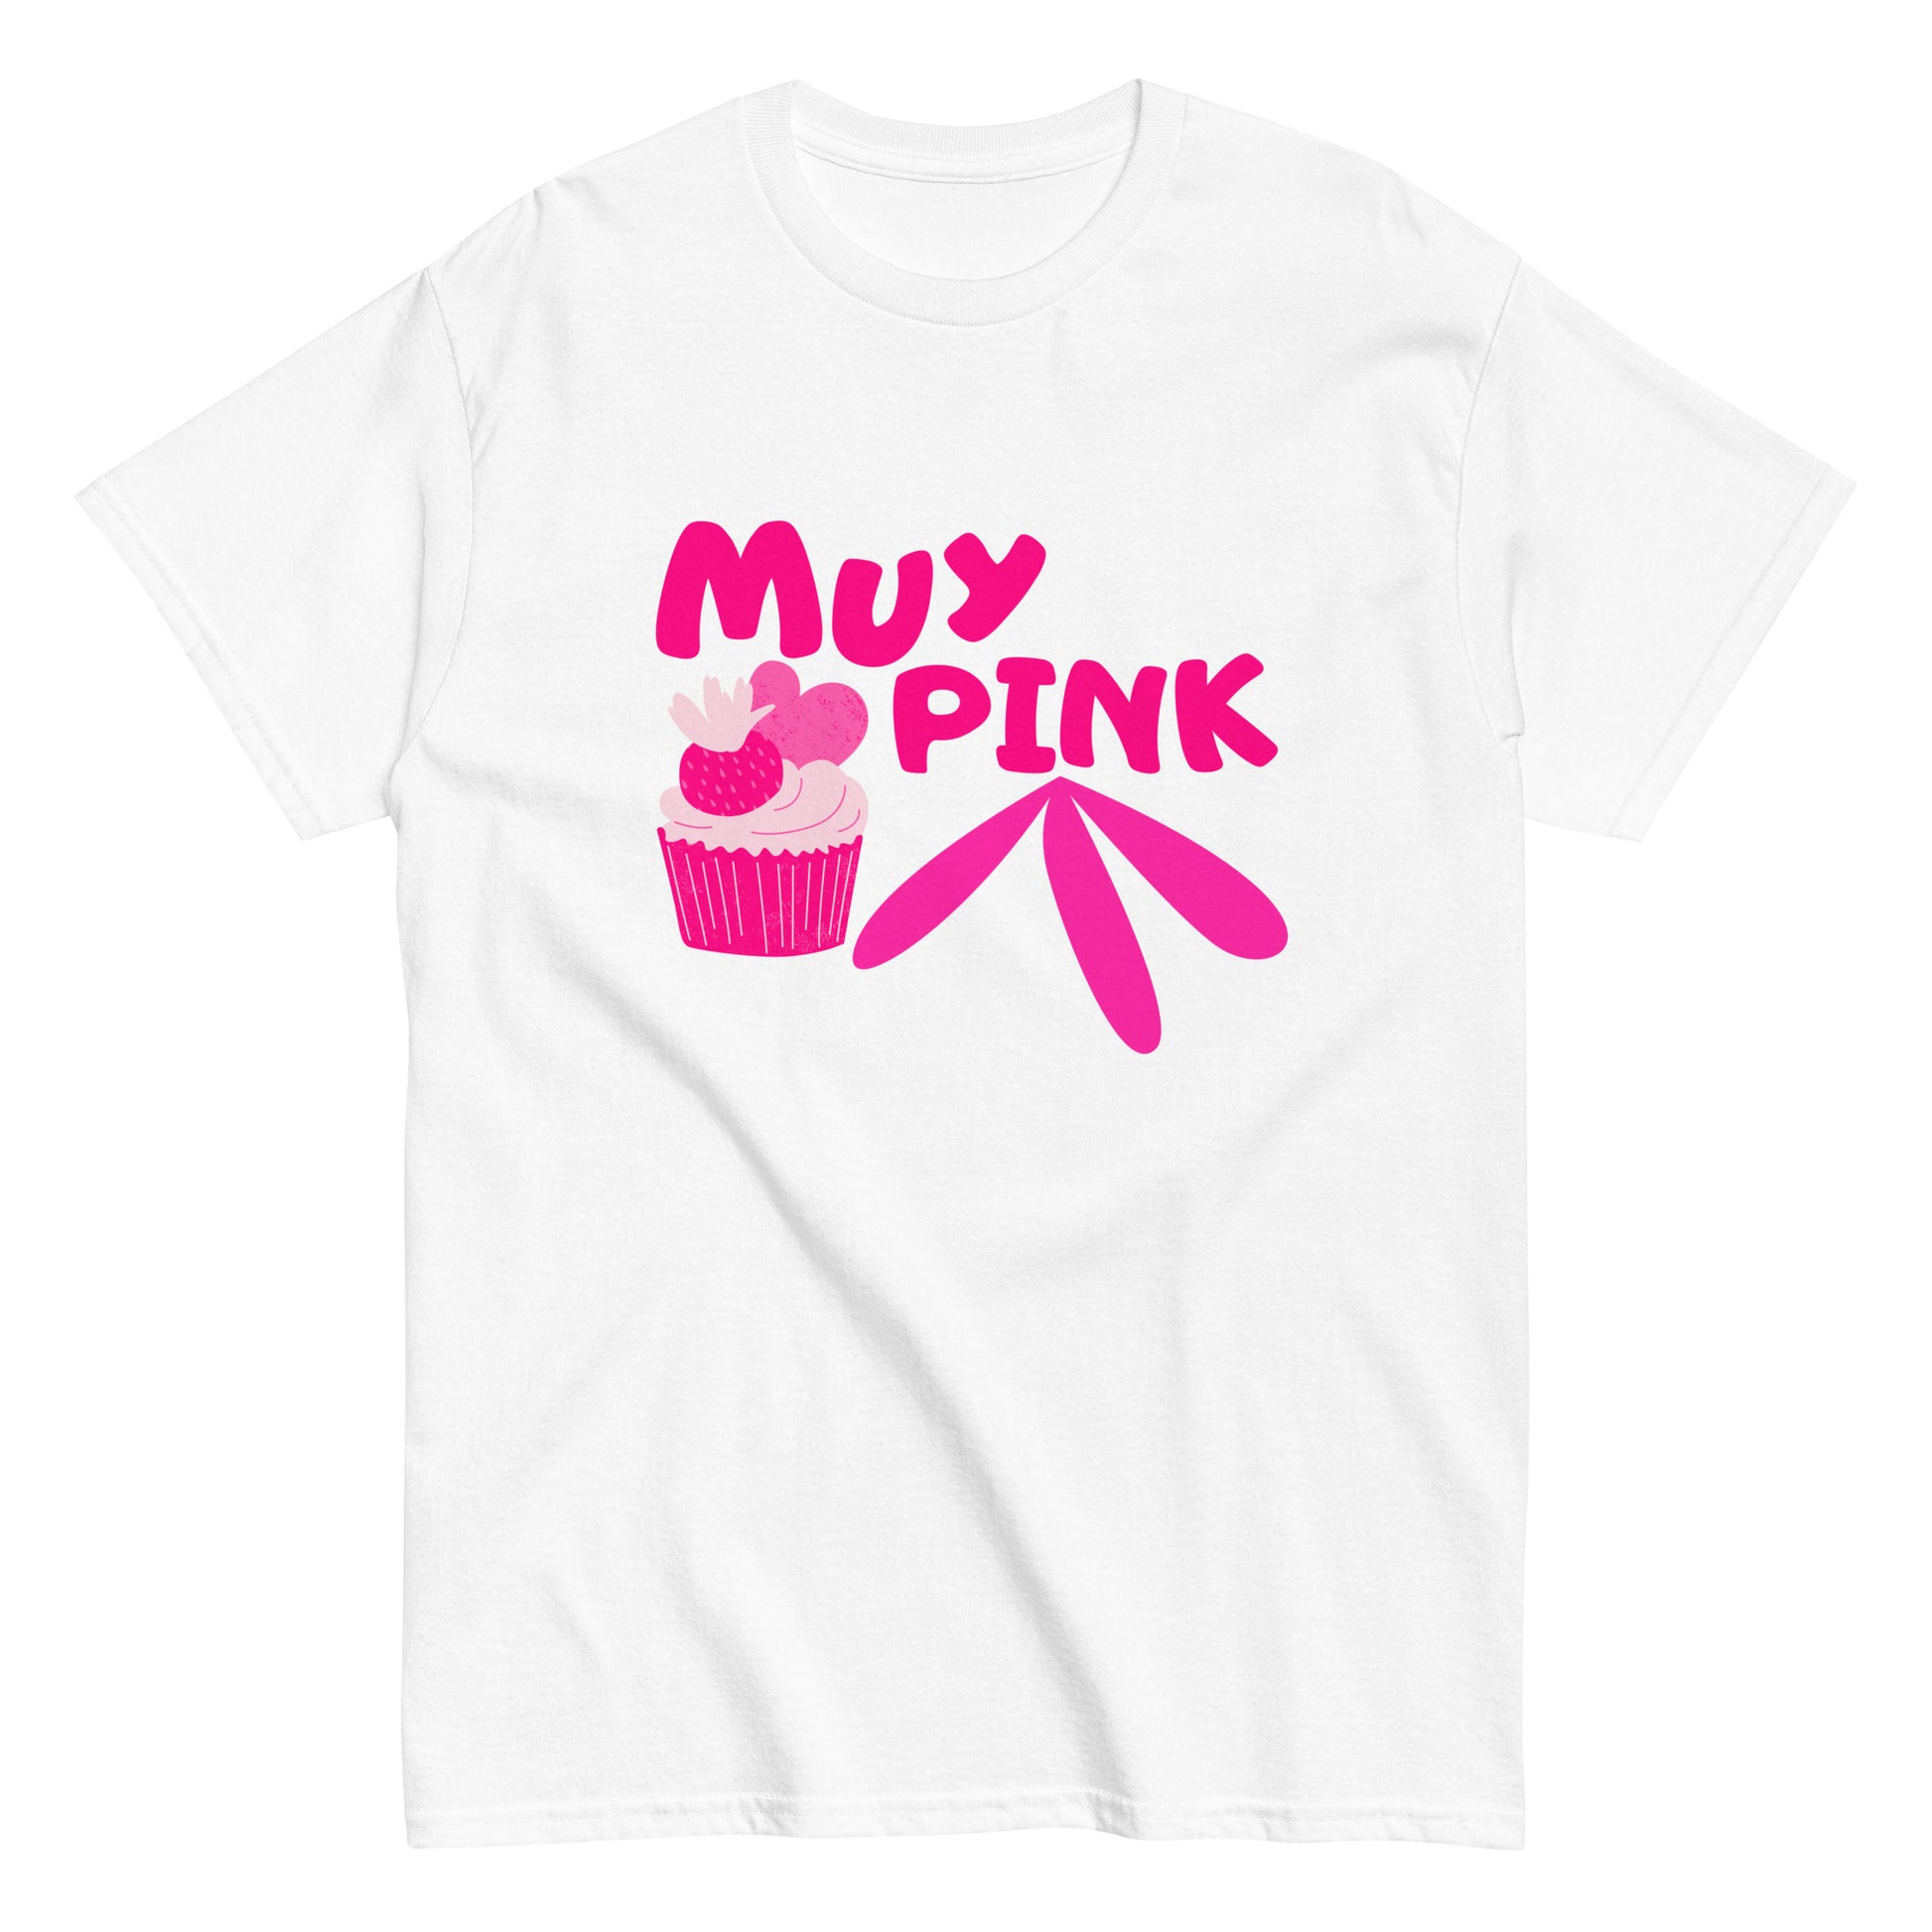 Camiseta original para hombres con diseño color rosa